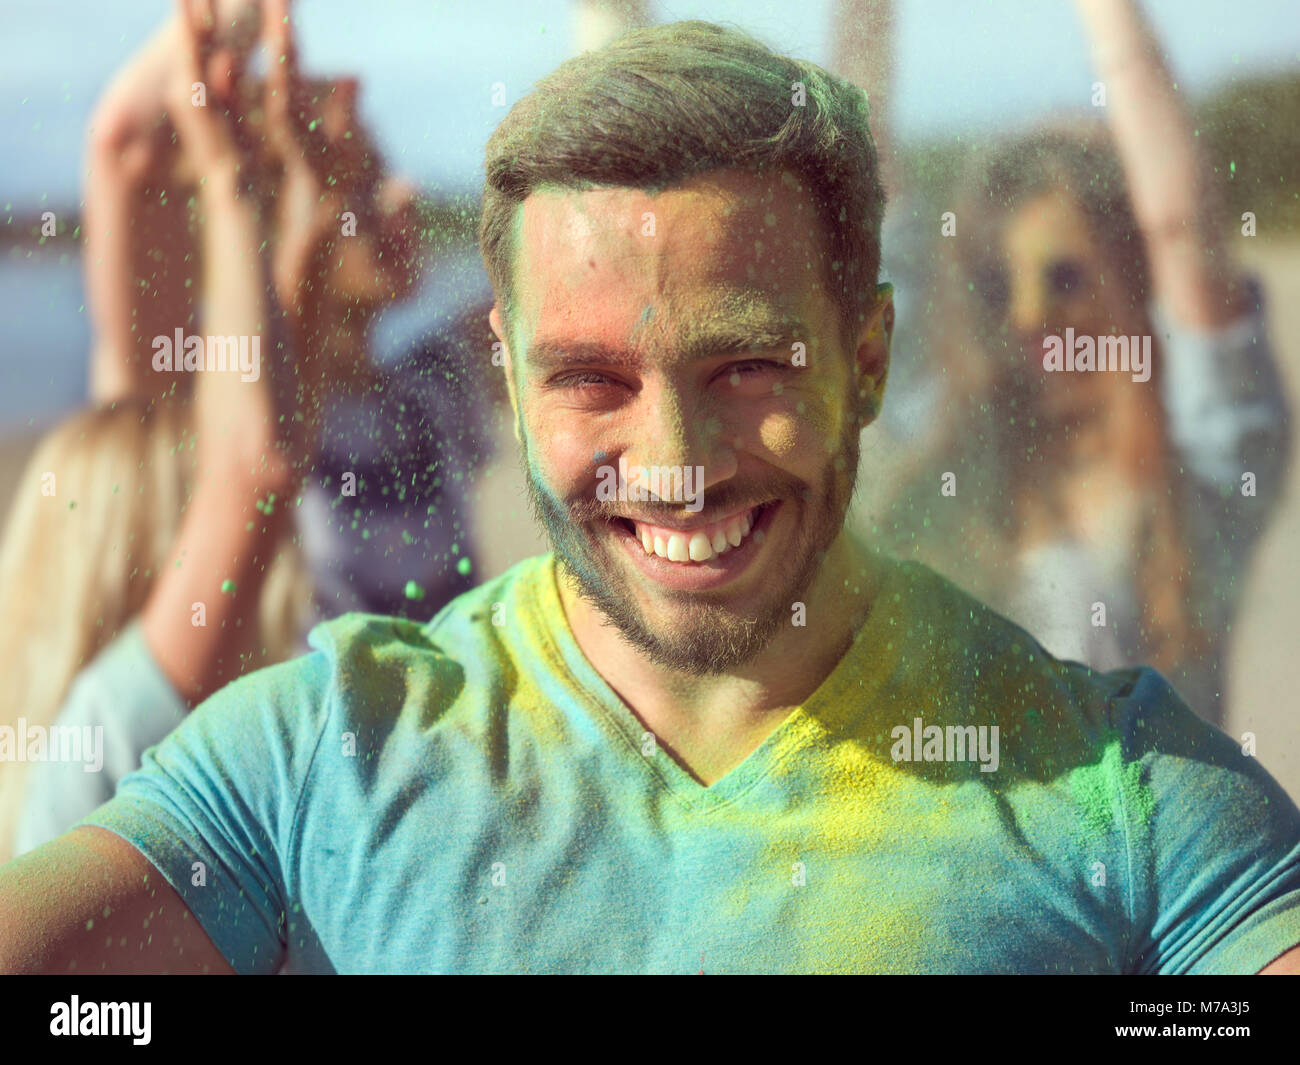 Portrait d'un selfies homme musclé de célébrer Holi Festival avec ses amis. Son visage et ses vêtements sont couverts de poudre colorée. Banque D'Images